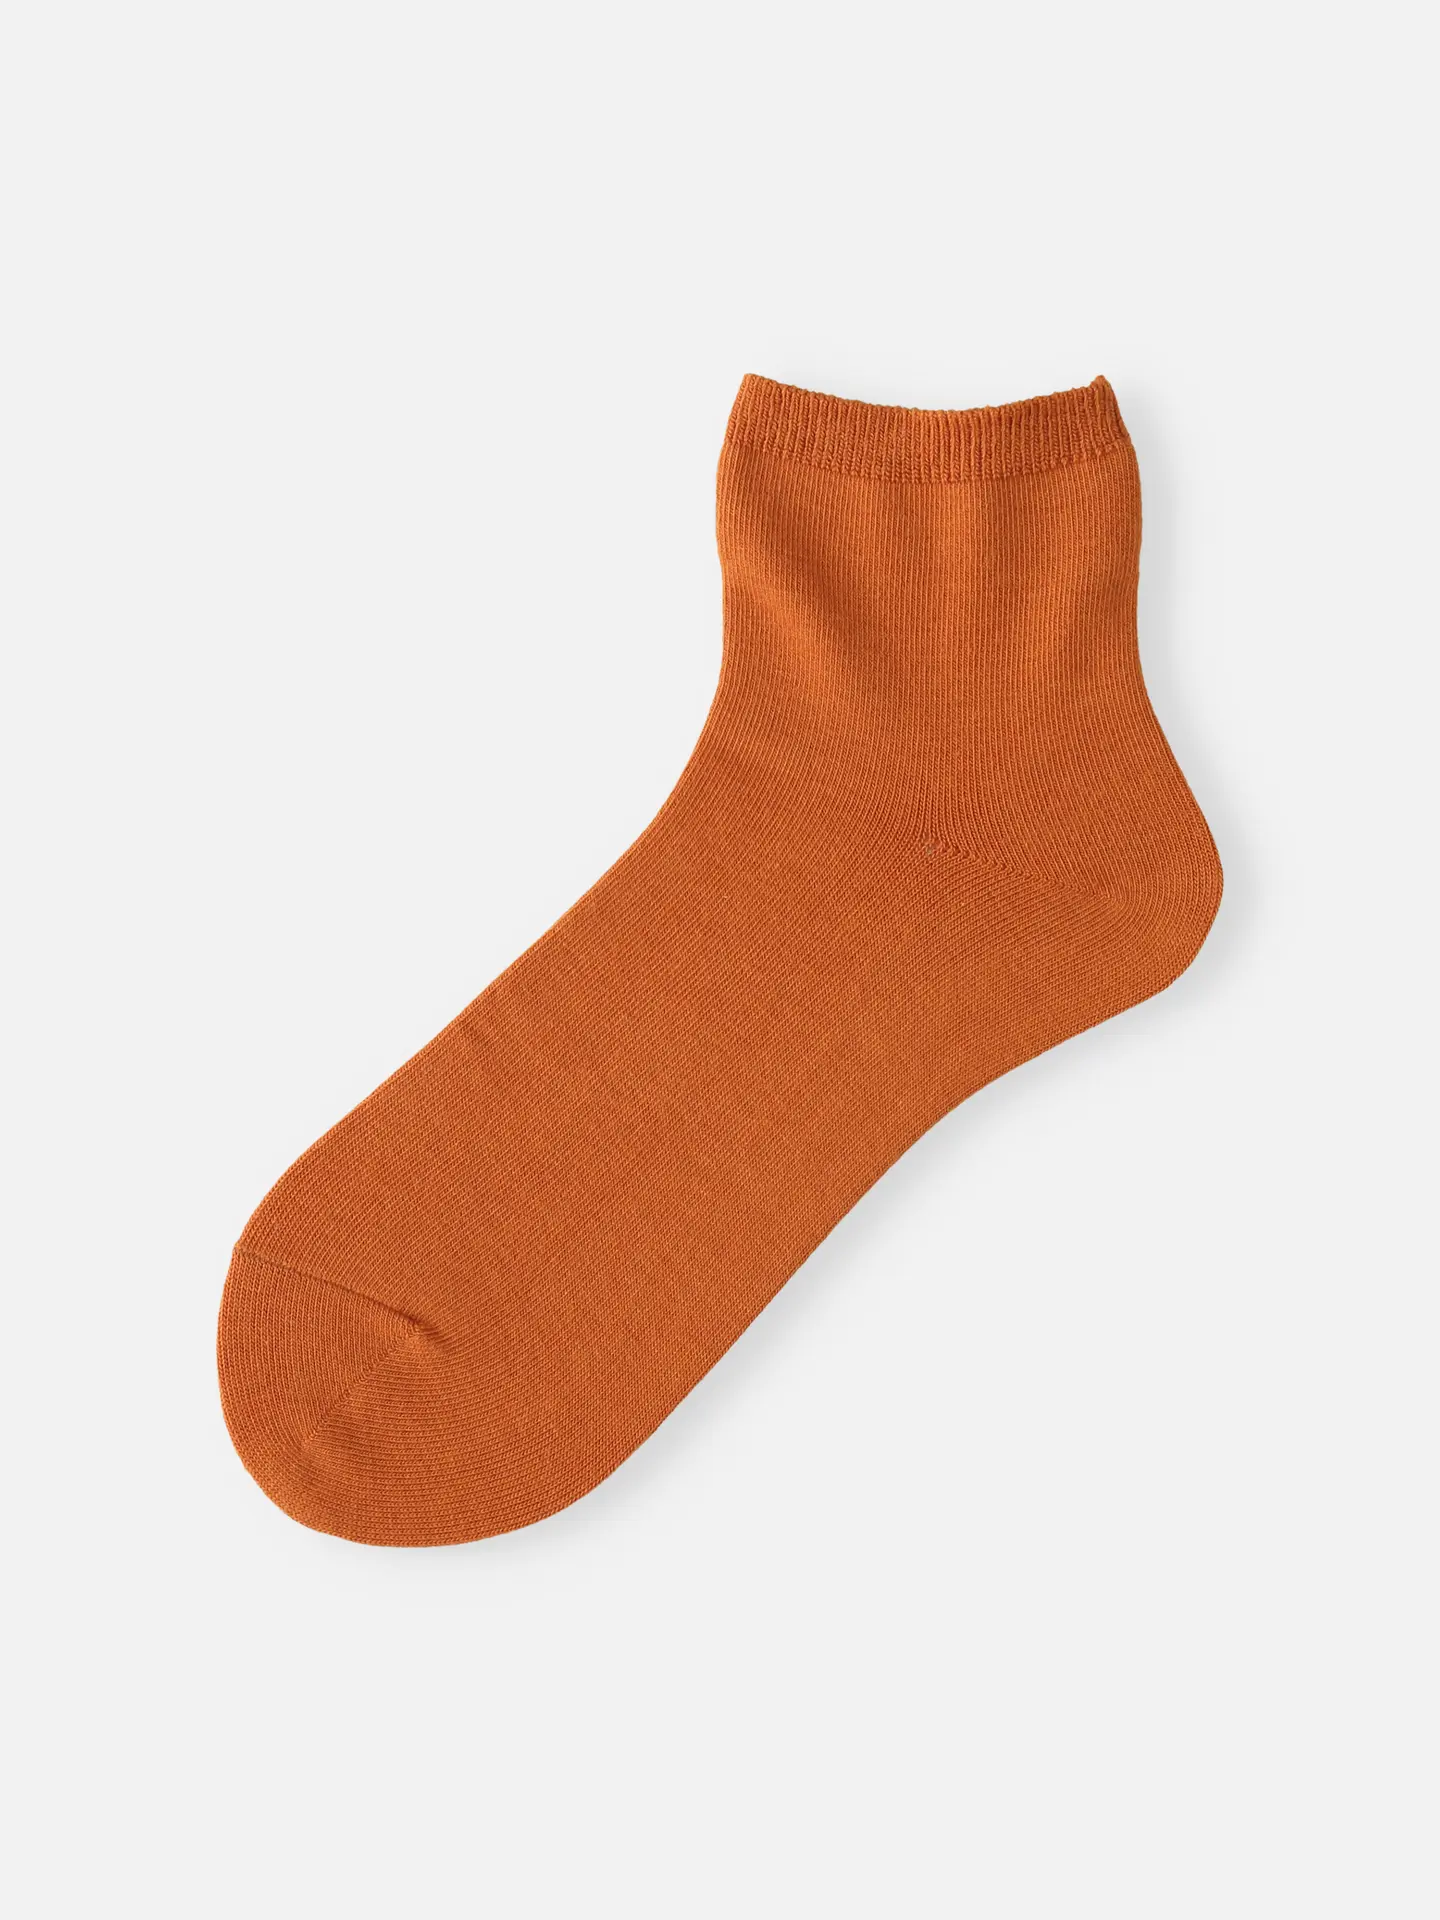 オレンジ系の靴下 | 靴下屋公式通販 Tabio オンラインストア